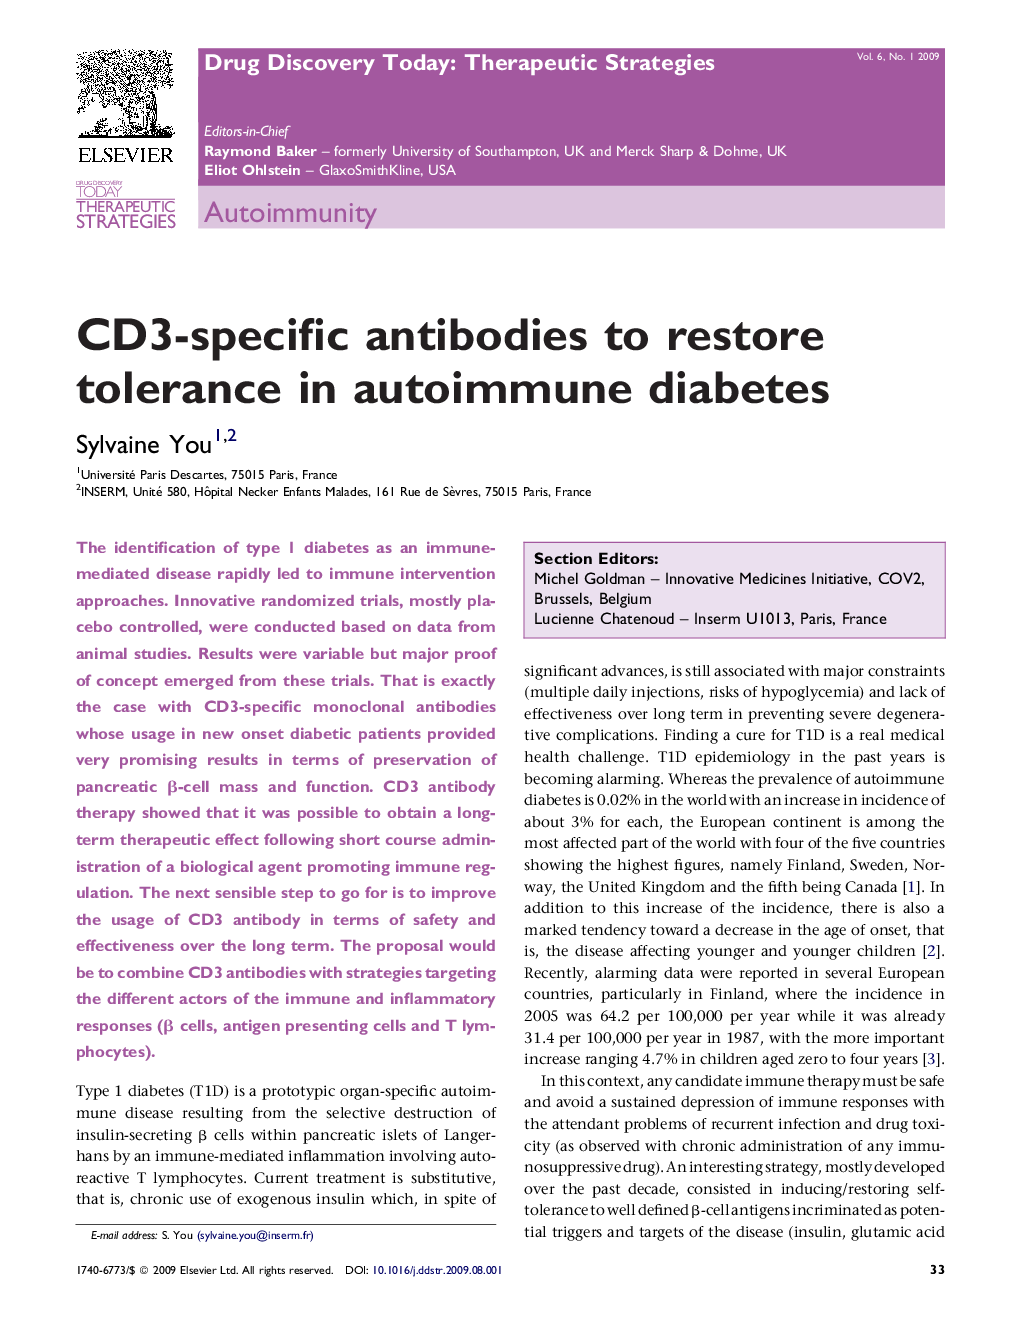 CD3-specific antibodies to restore tolerance in autoimmune diabetes